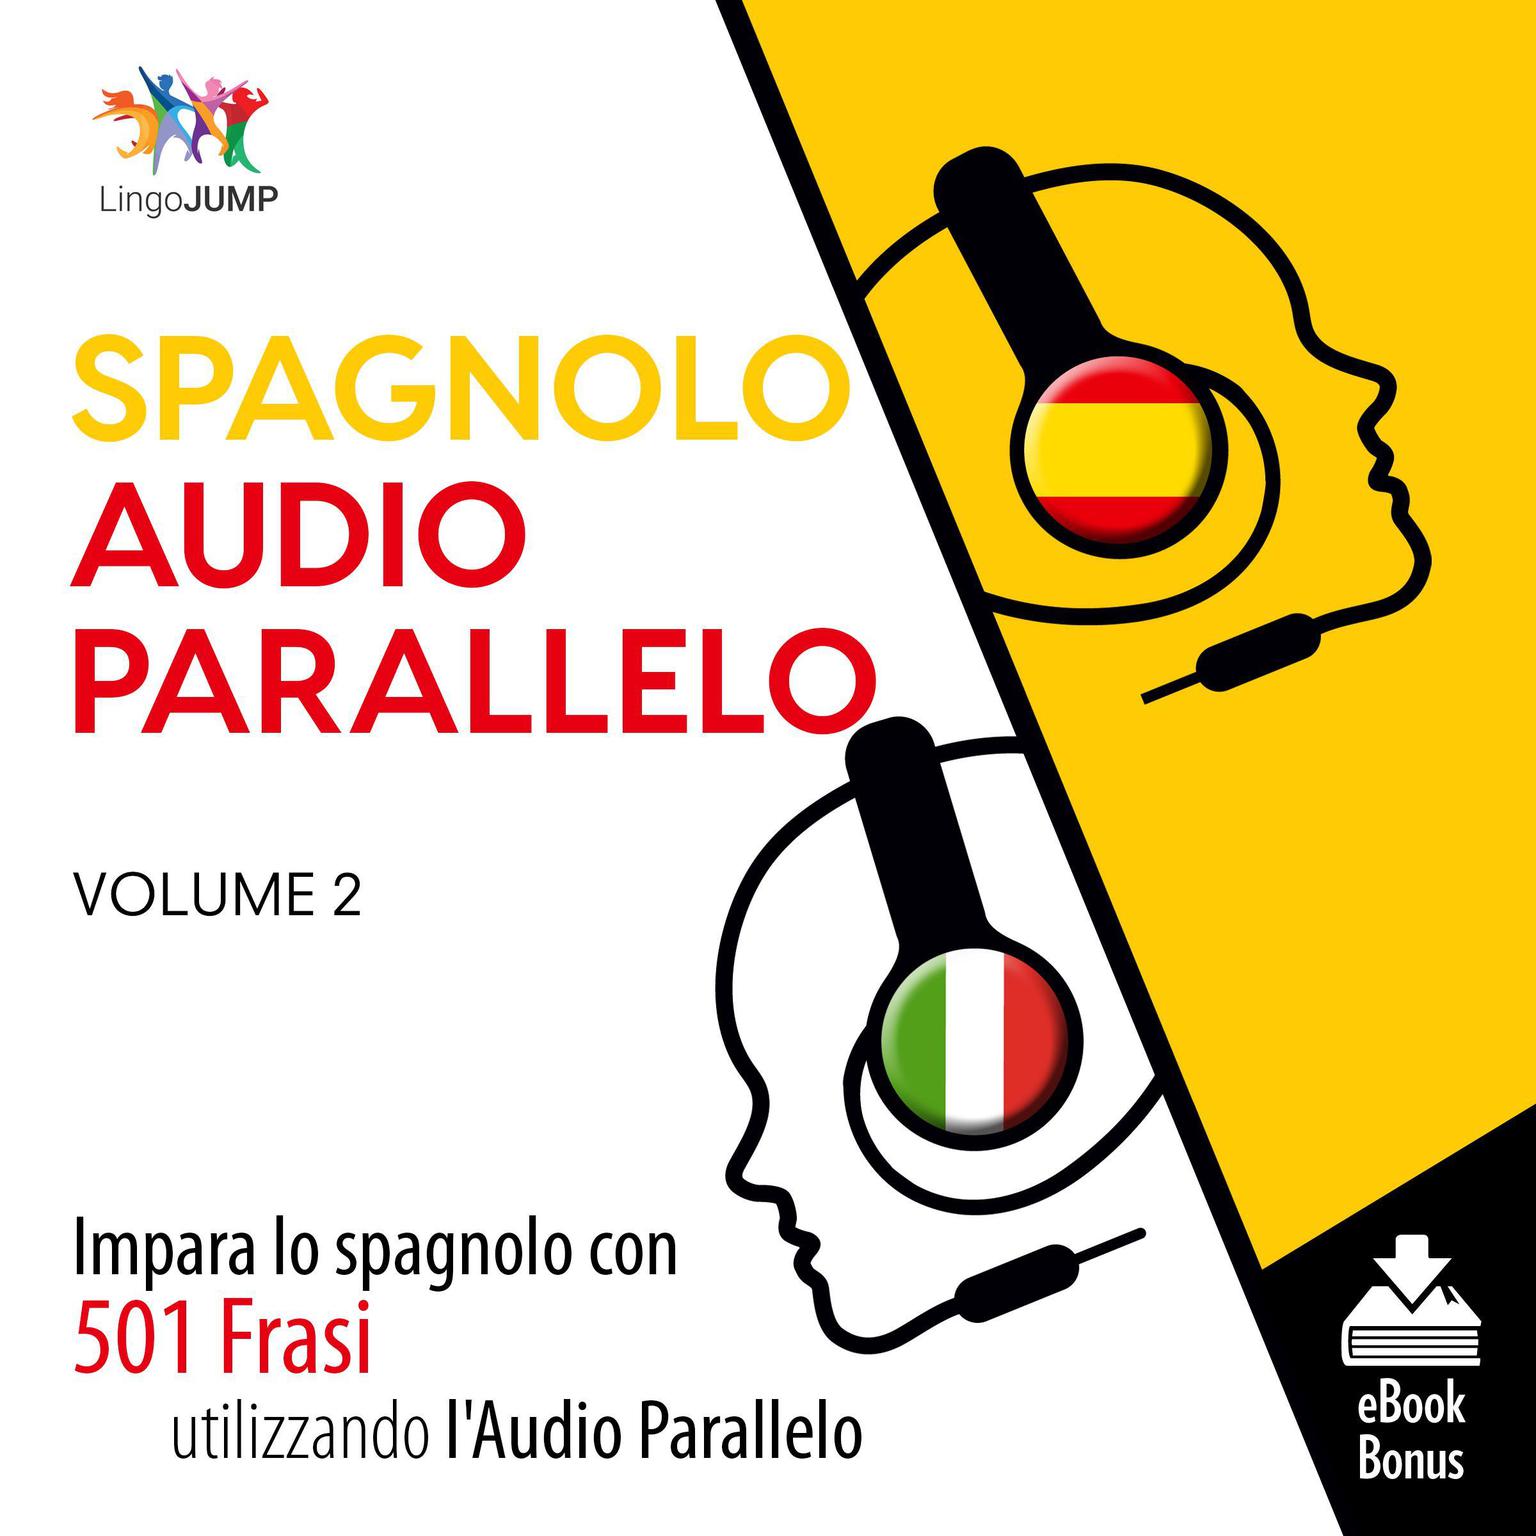 Audio Parallelo Spagnolo - Impara lo spagnolo con 501 Frasi utilizzando lAudio Parallelo - Volume 2 Audiobook, by Lingo Jump